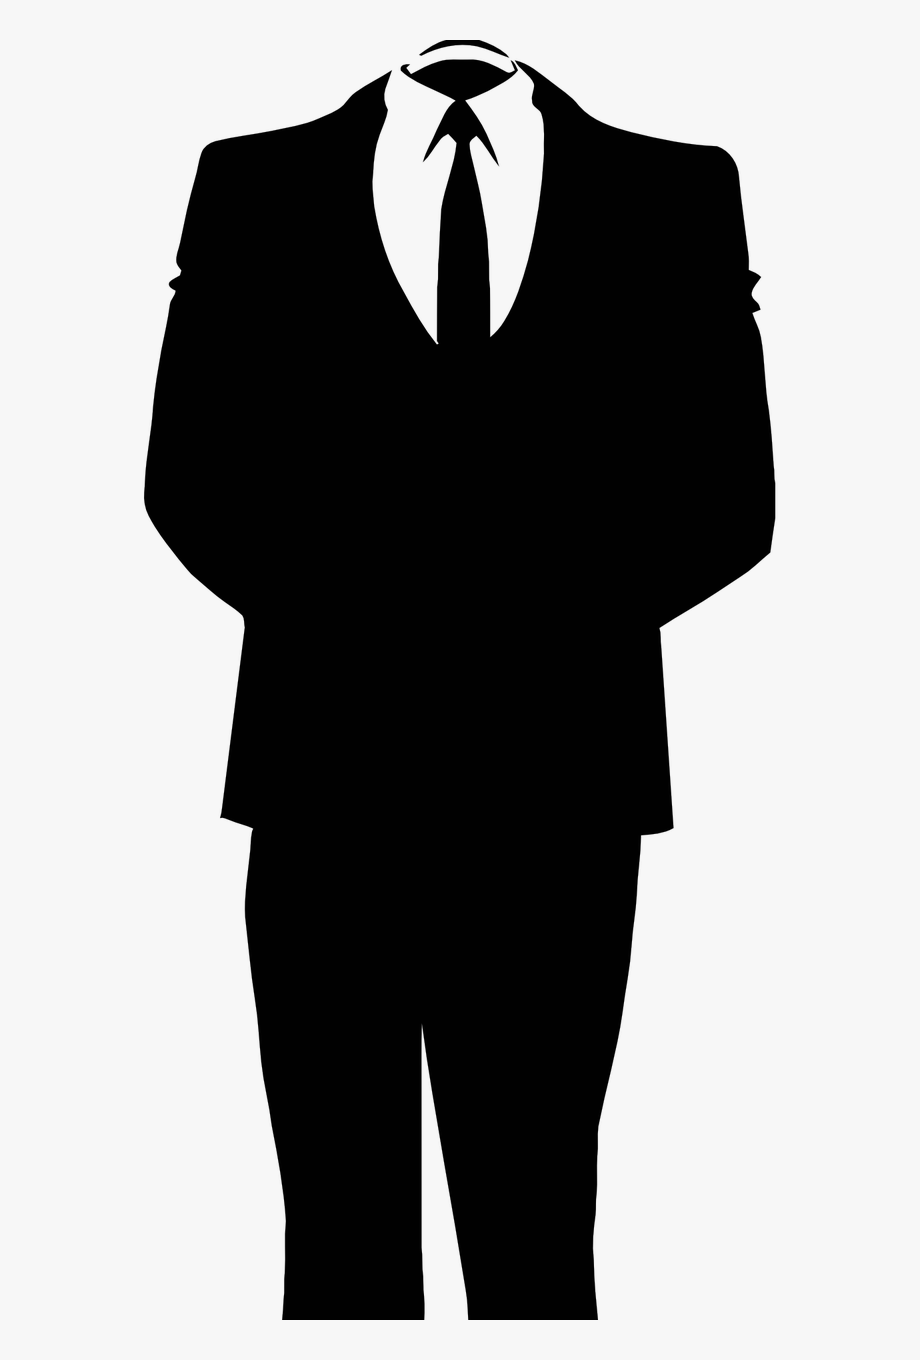 Man Business Suit Black Png Image